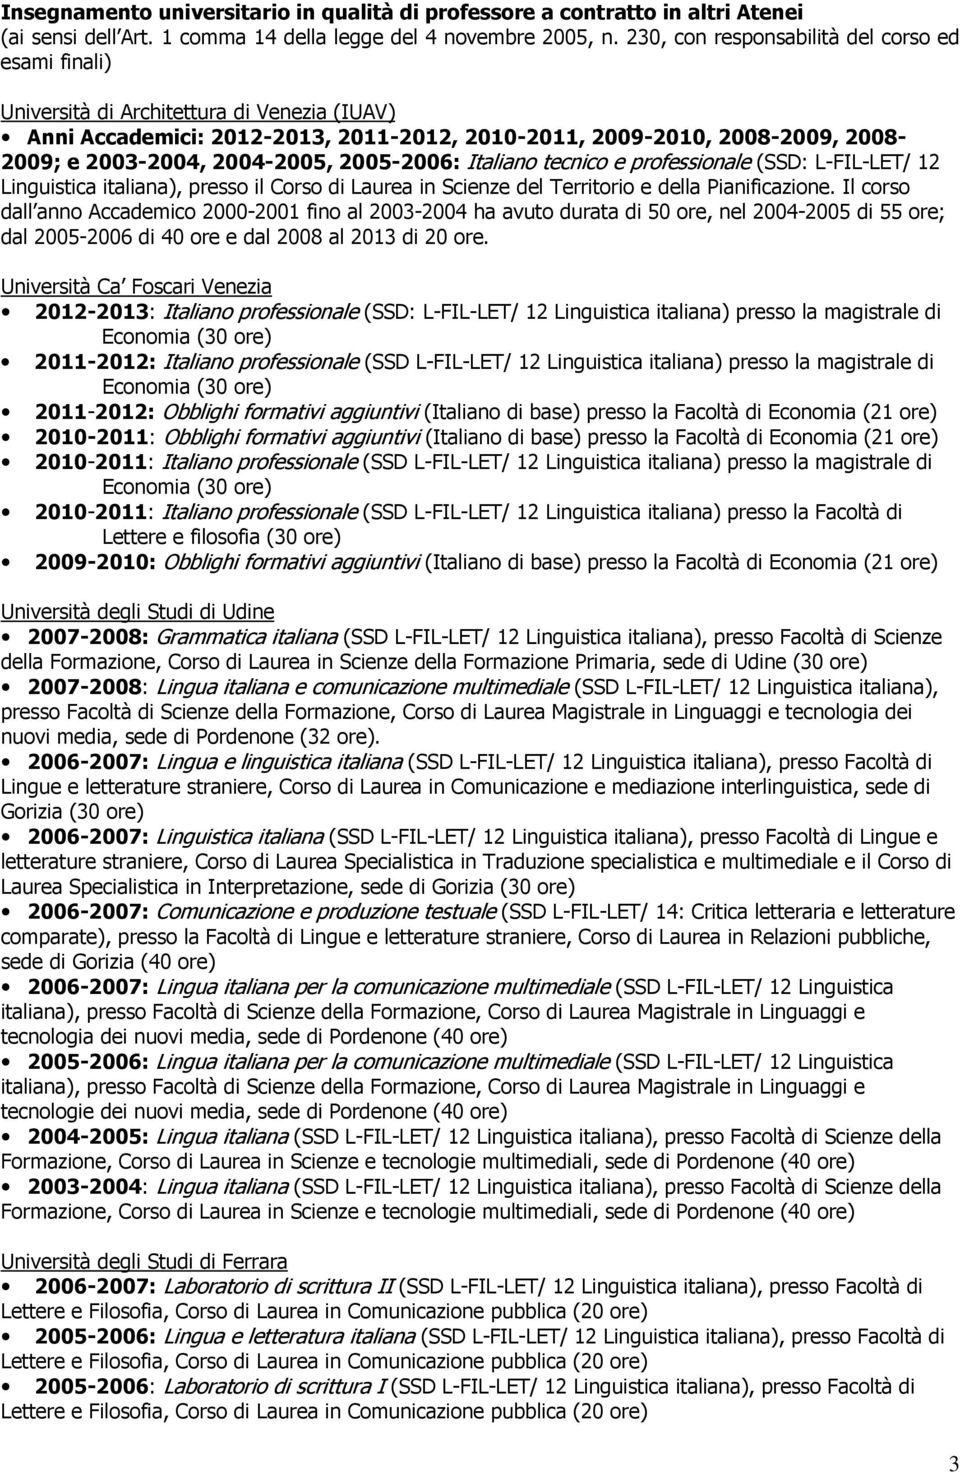 2004-2005, 2005-2006: Italiano tecnico e professionale (SSD: L-FIL-LET/ 12 Linguistica italiana), presso il Corso di Laurea in Scienze del Territorio e della Pianificazione.